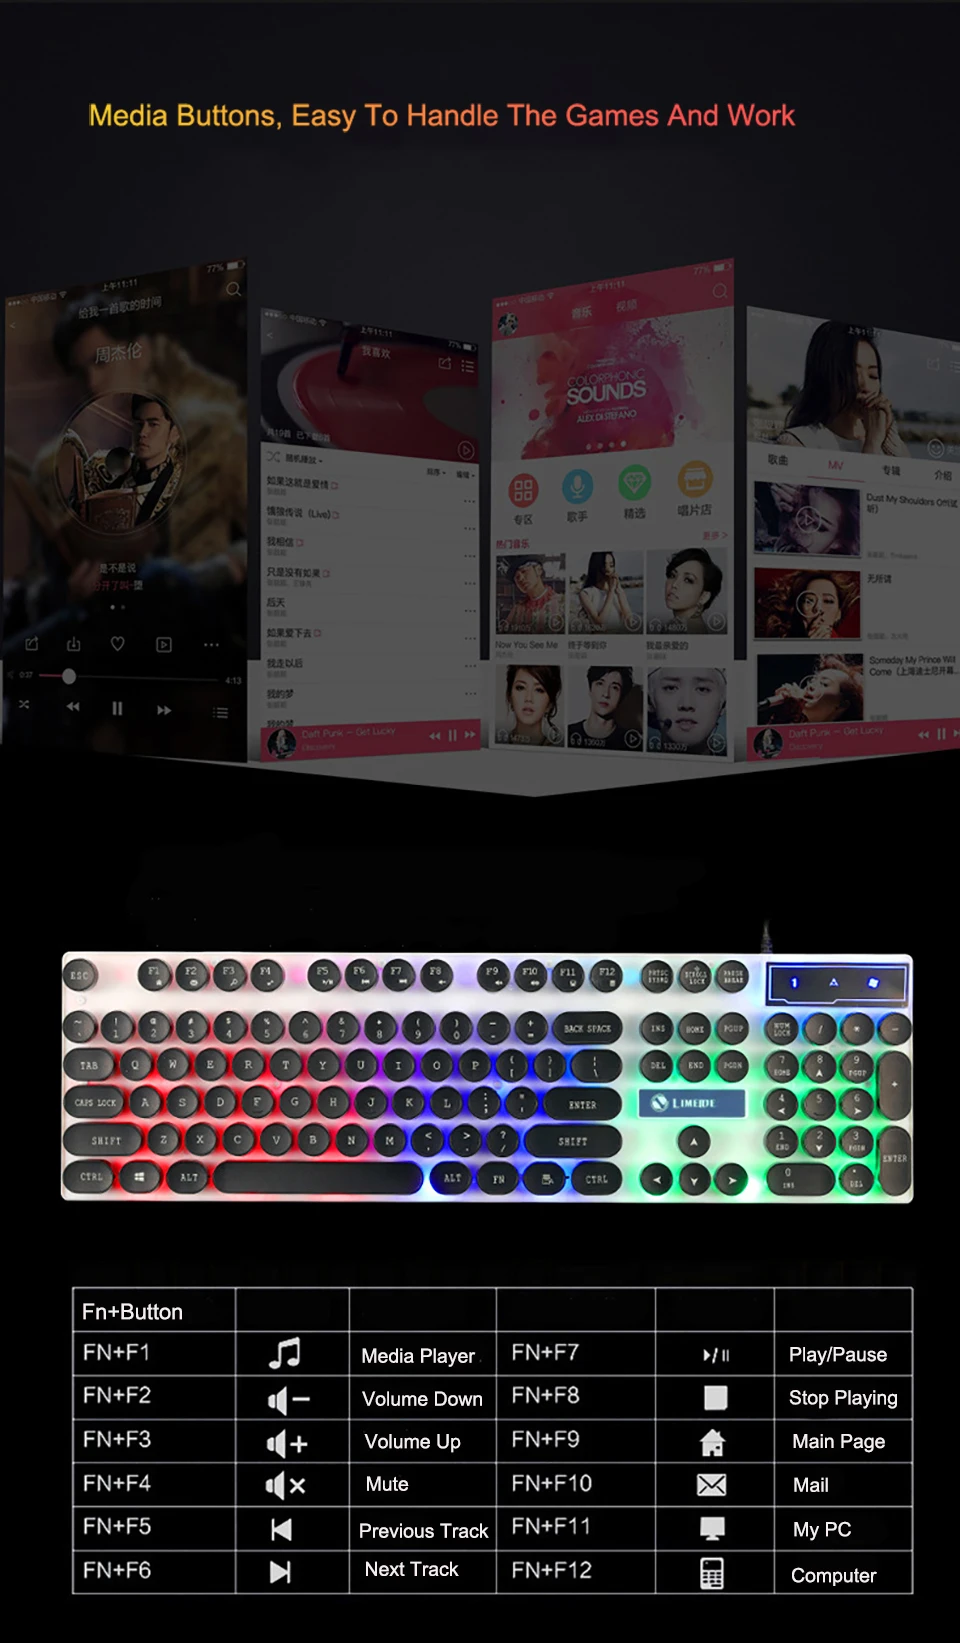 

Waterproof Gaming Keyboard Wired Computer PC Laptop Desktop Keyboard Colorful Backlit 104 Keys Gamer Ergonomics Design Full Size